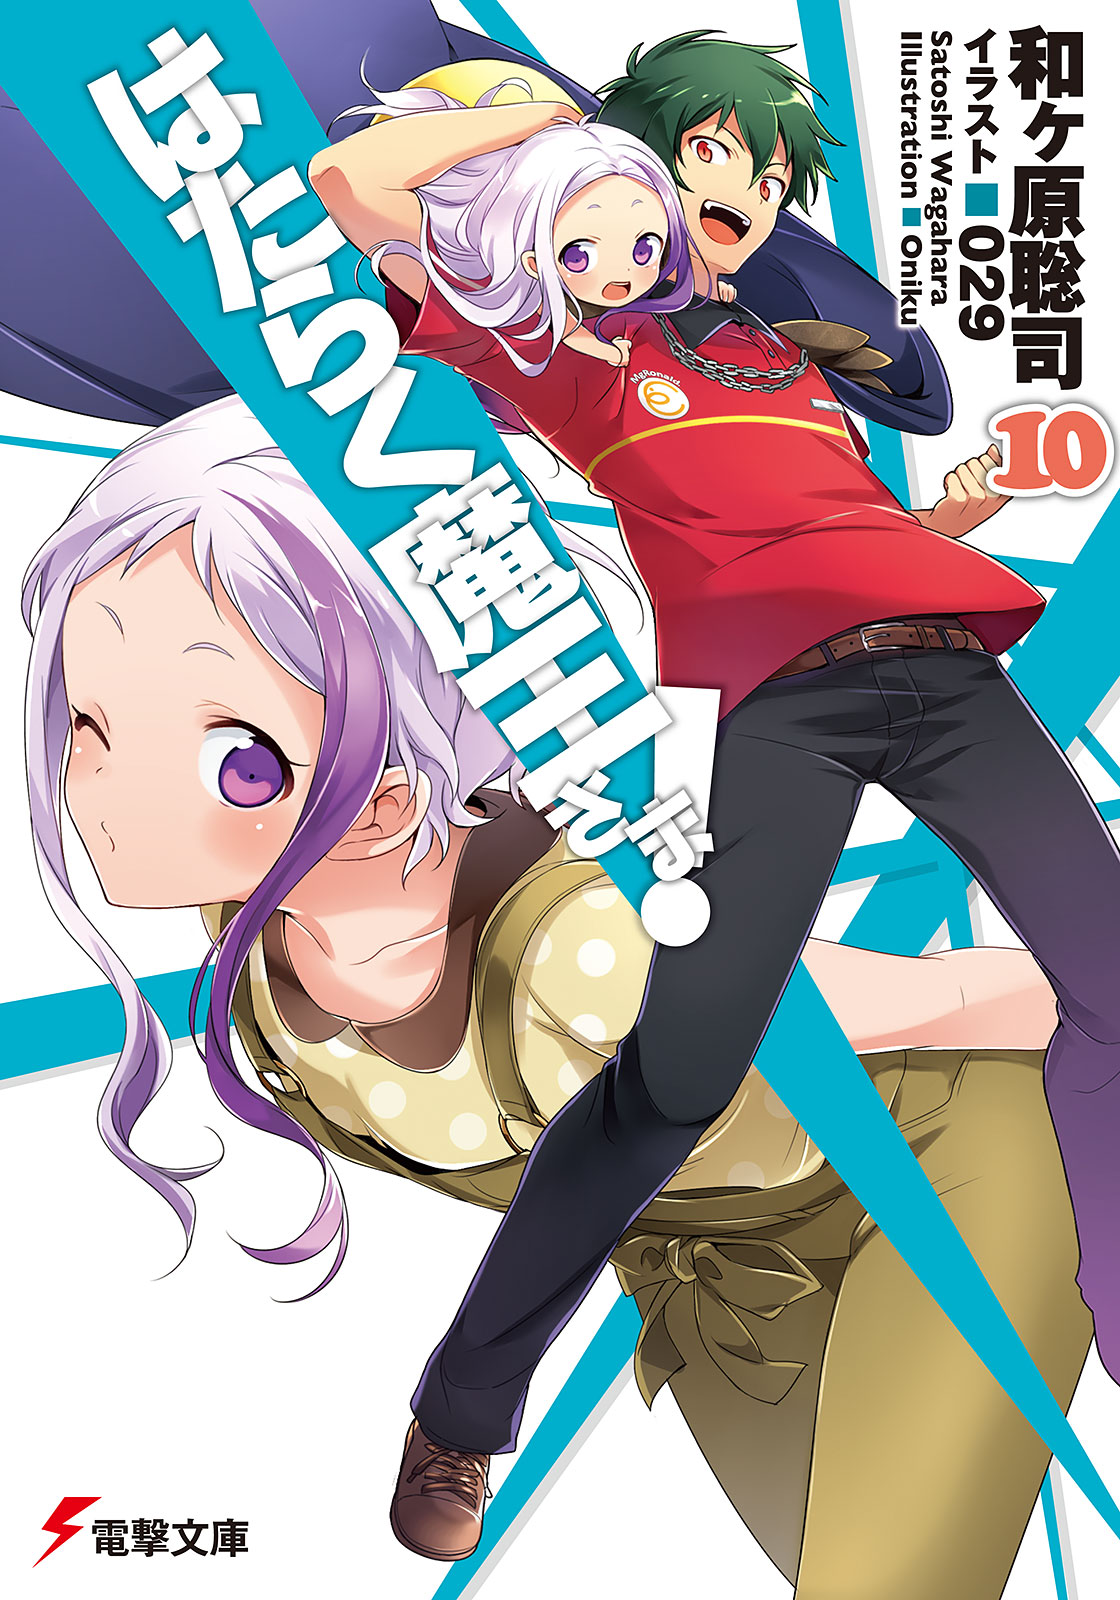 Hataraku Maou Sama Manga Volume 9, Hataraku Maou-sama! Wiki